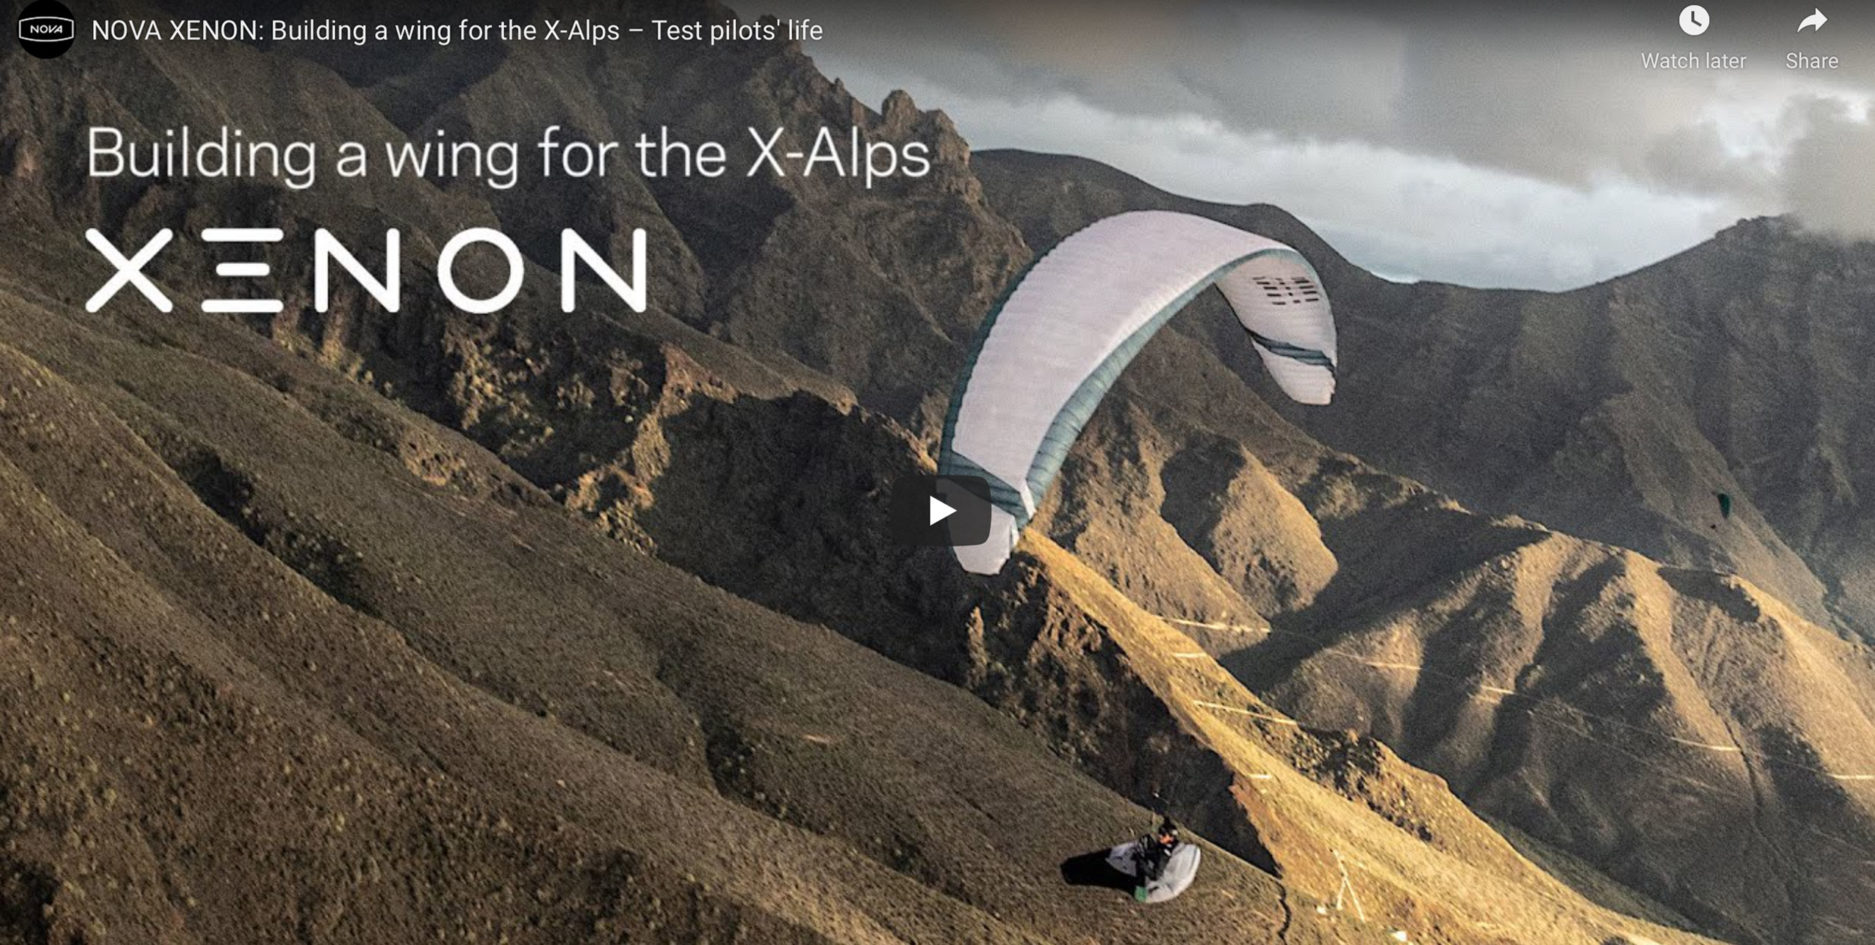 Nova Xenon – Building a wing for the X-Alps